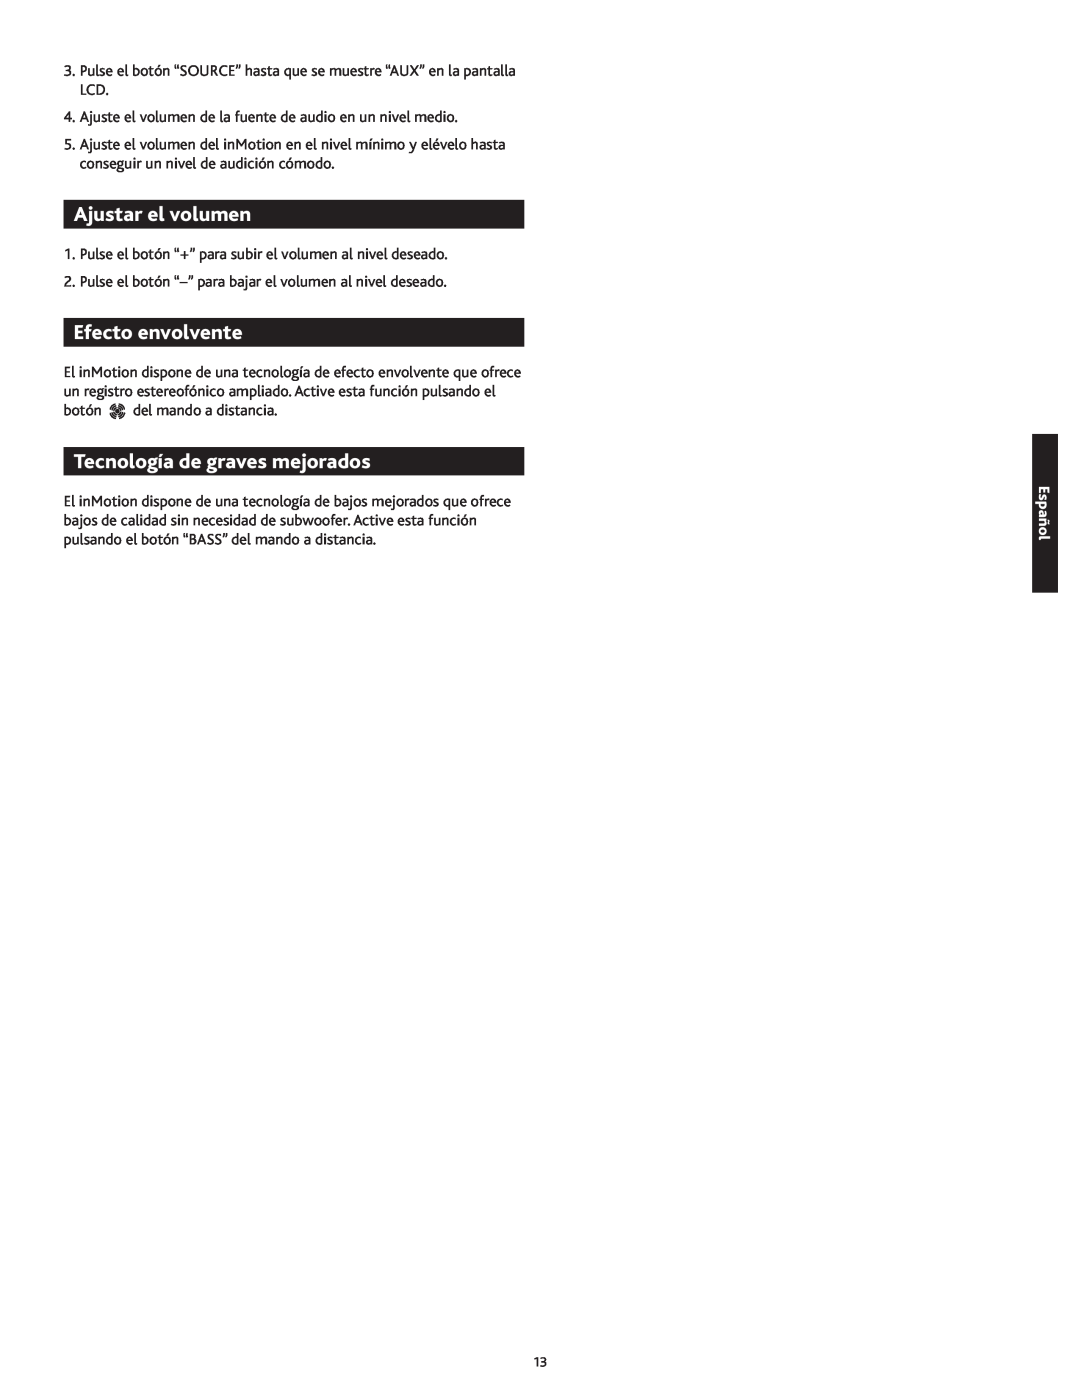 Altec Lansing 1M414 manual Ajustar el volumen, Efecto envolvente, Tecnología de graves mejorados, Español 